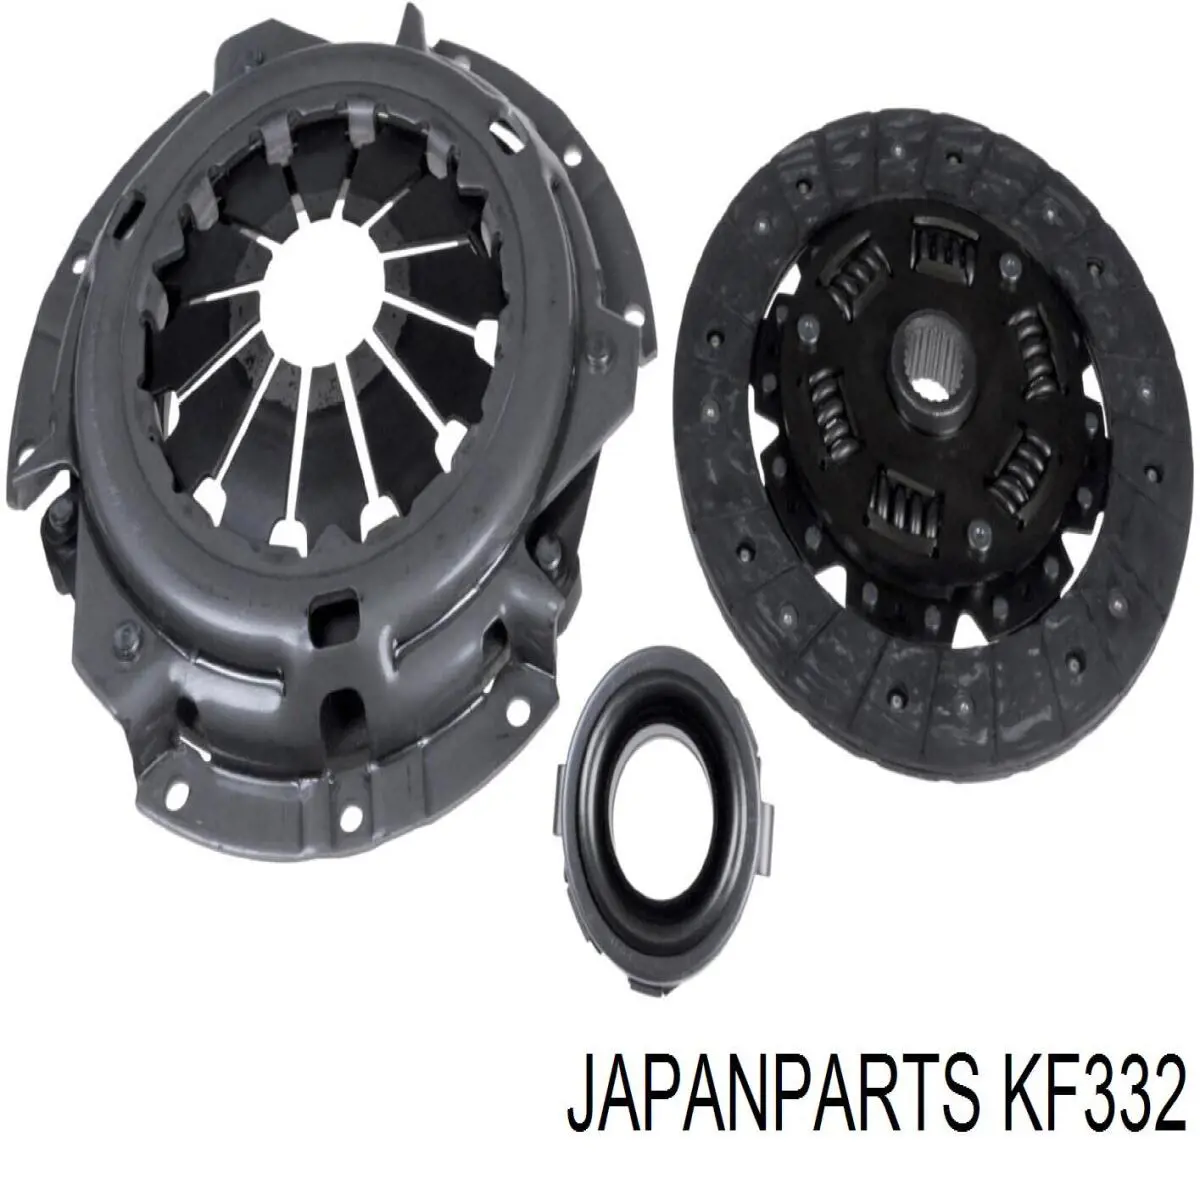 Kit de embrague (3 partes) JAPANPARTS KF332